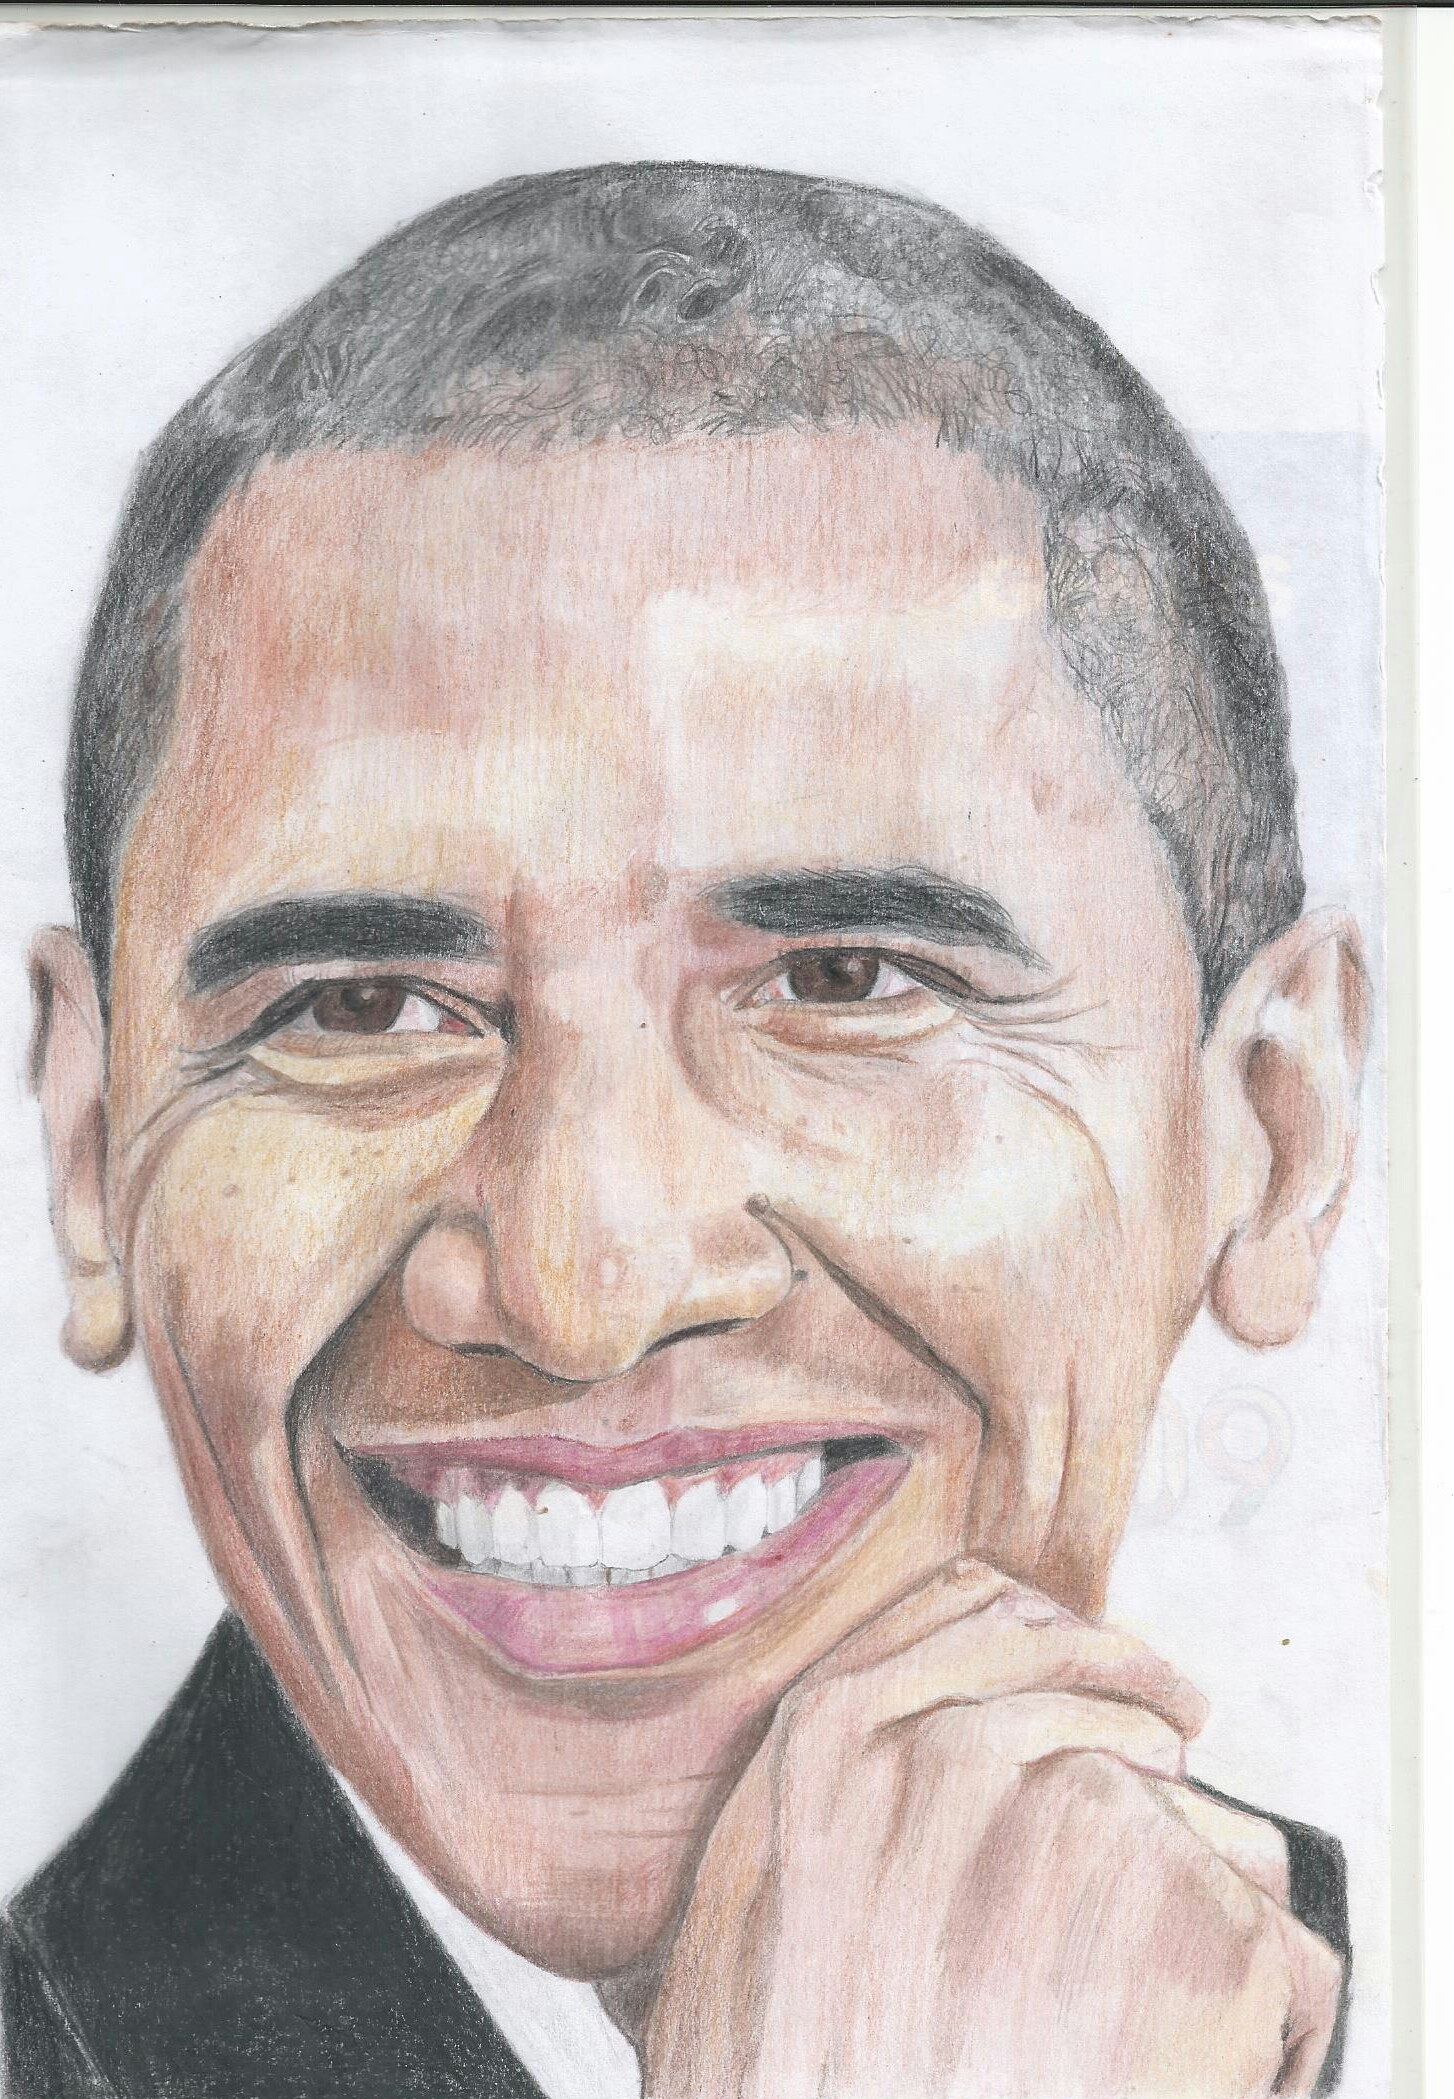 Unique Sketch Drawing Of Obama for Kindergarten